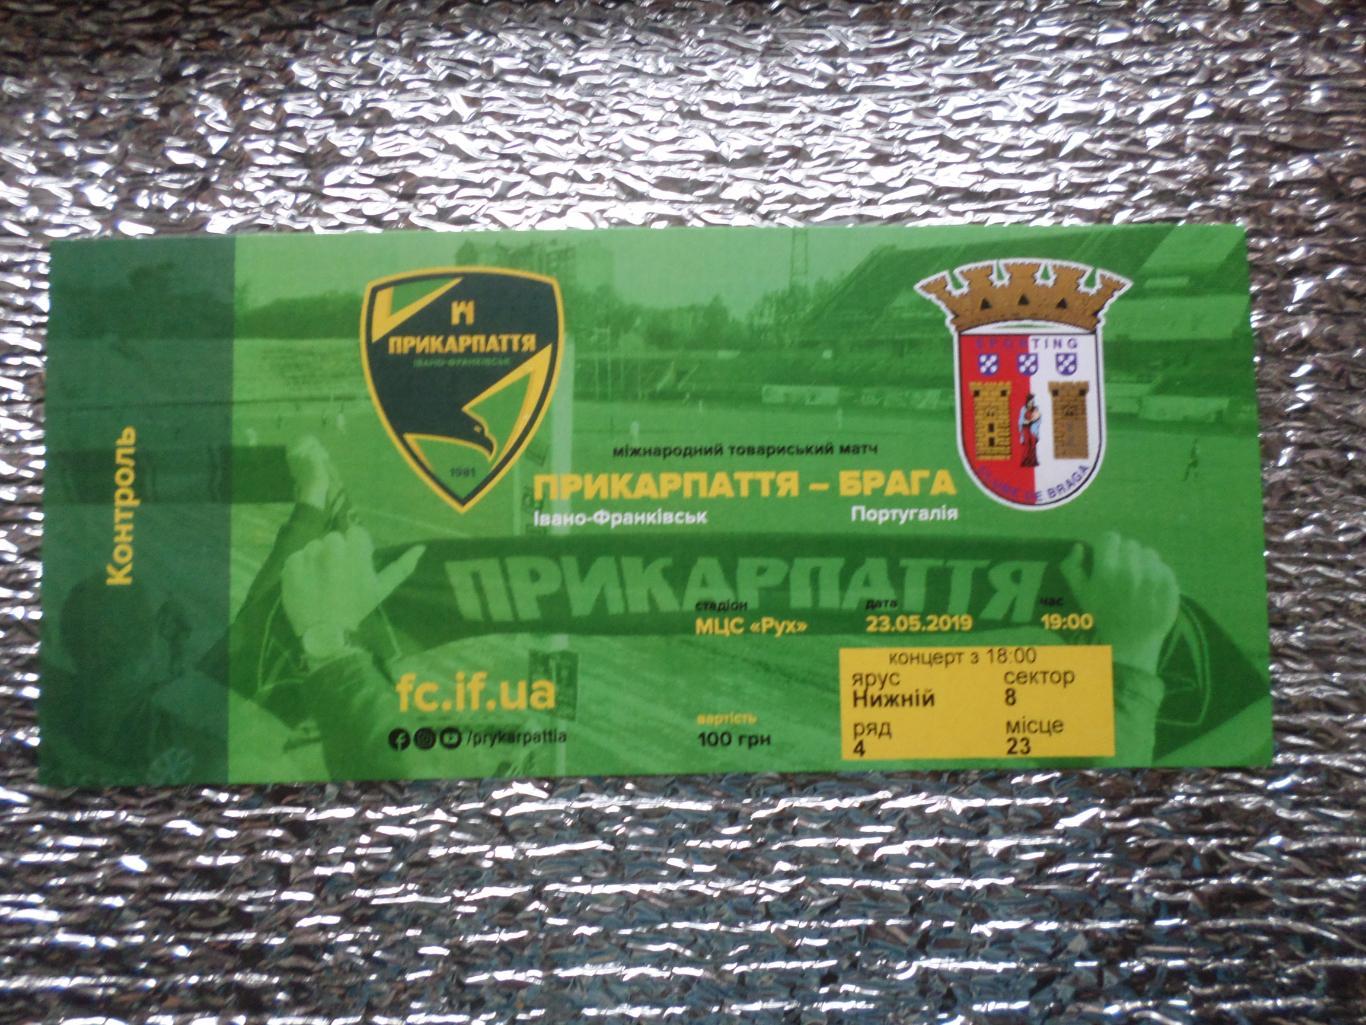 Билет к матчу Прикарпатье Ивано-Франковск - Брага Португалия 2019 г